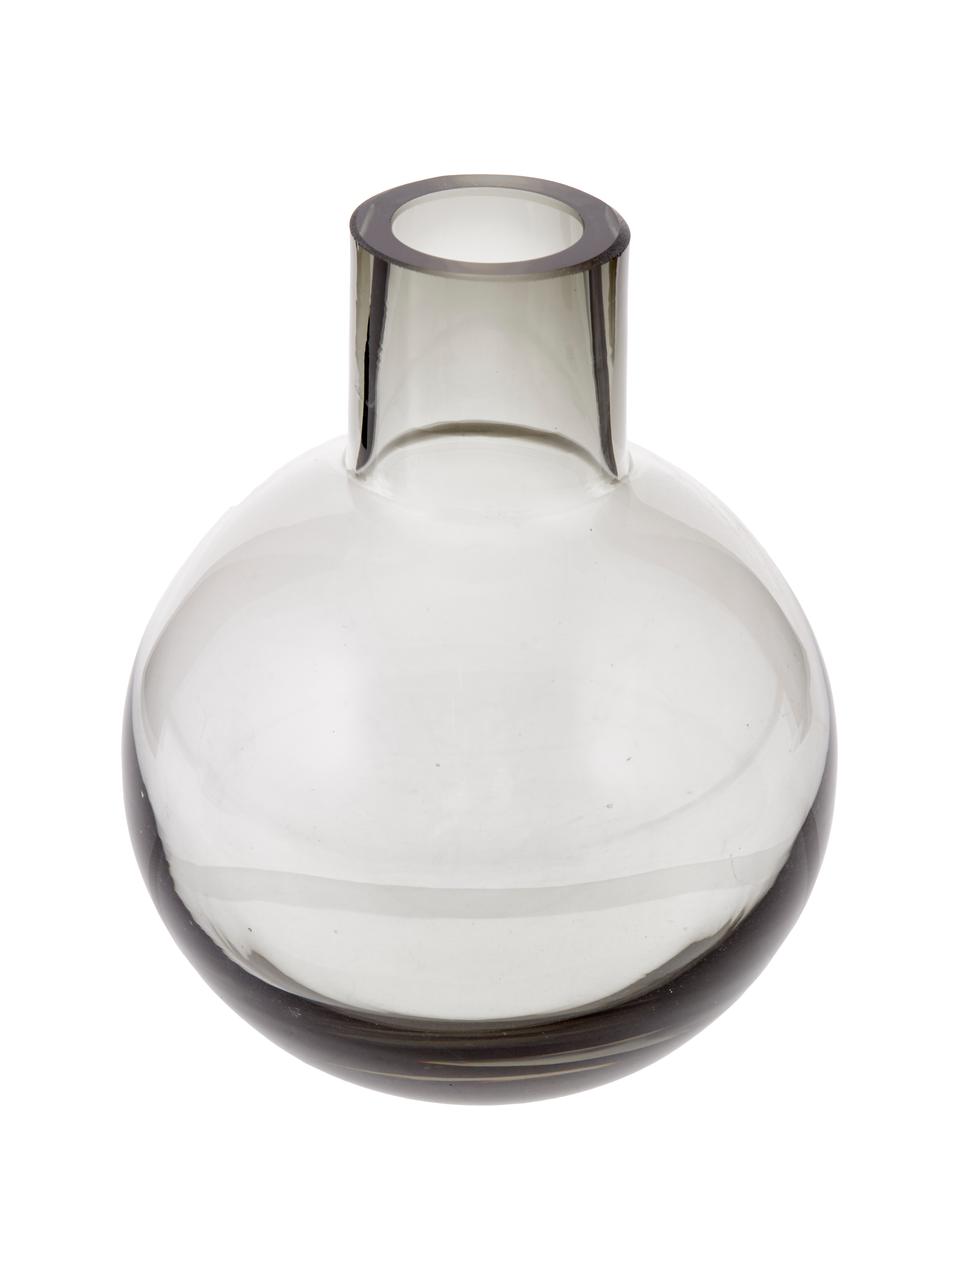 Handgemachte Karaffe Colored in Grau transparent, 1.5 L, Glas, Grau, transparent, H 25 cm, 1.5 L